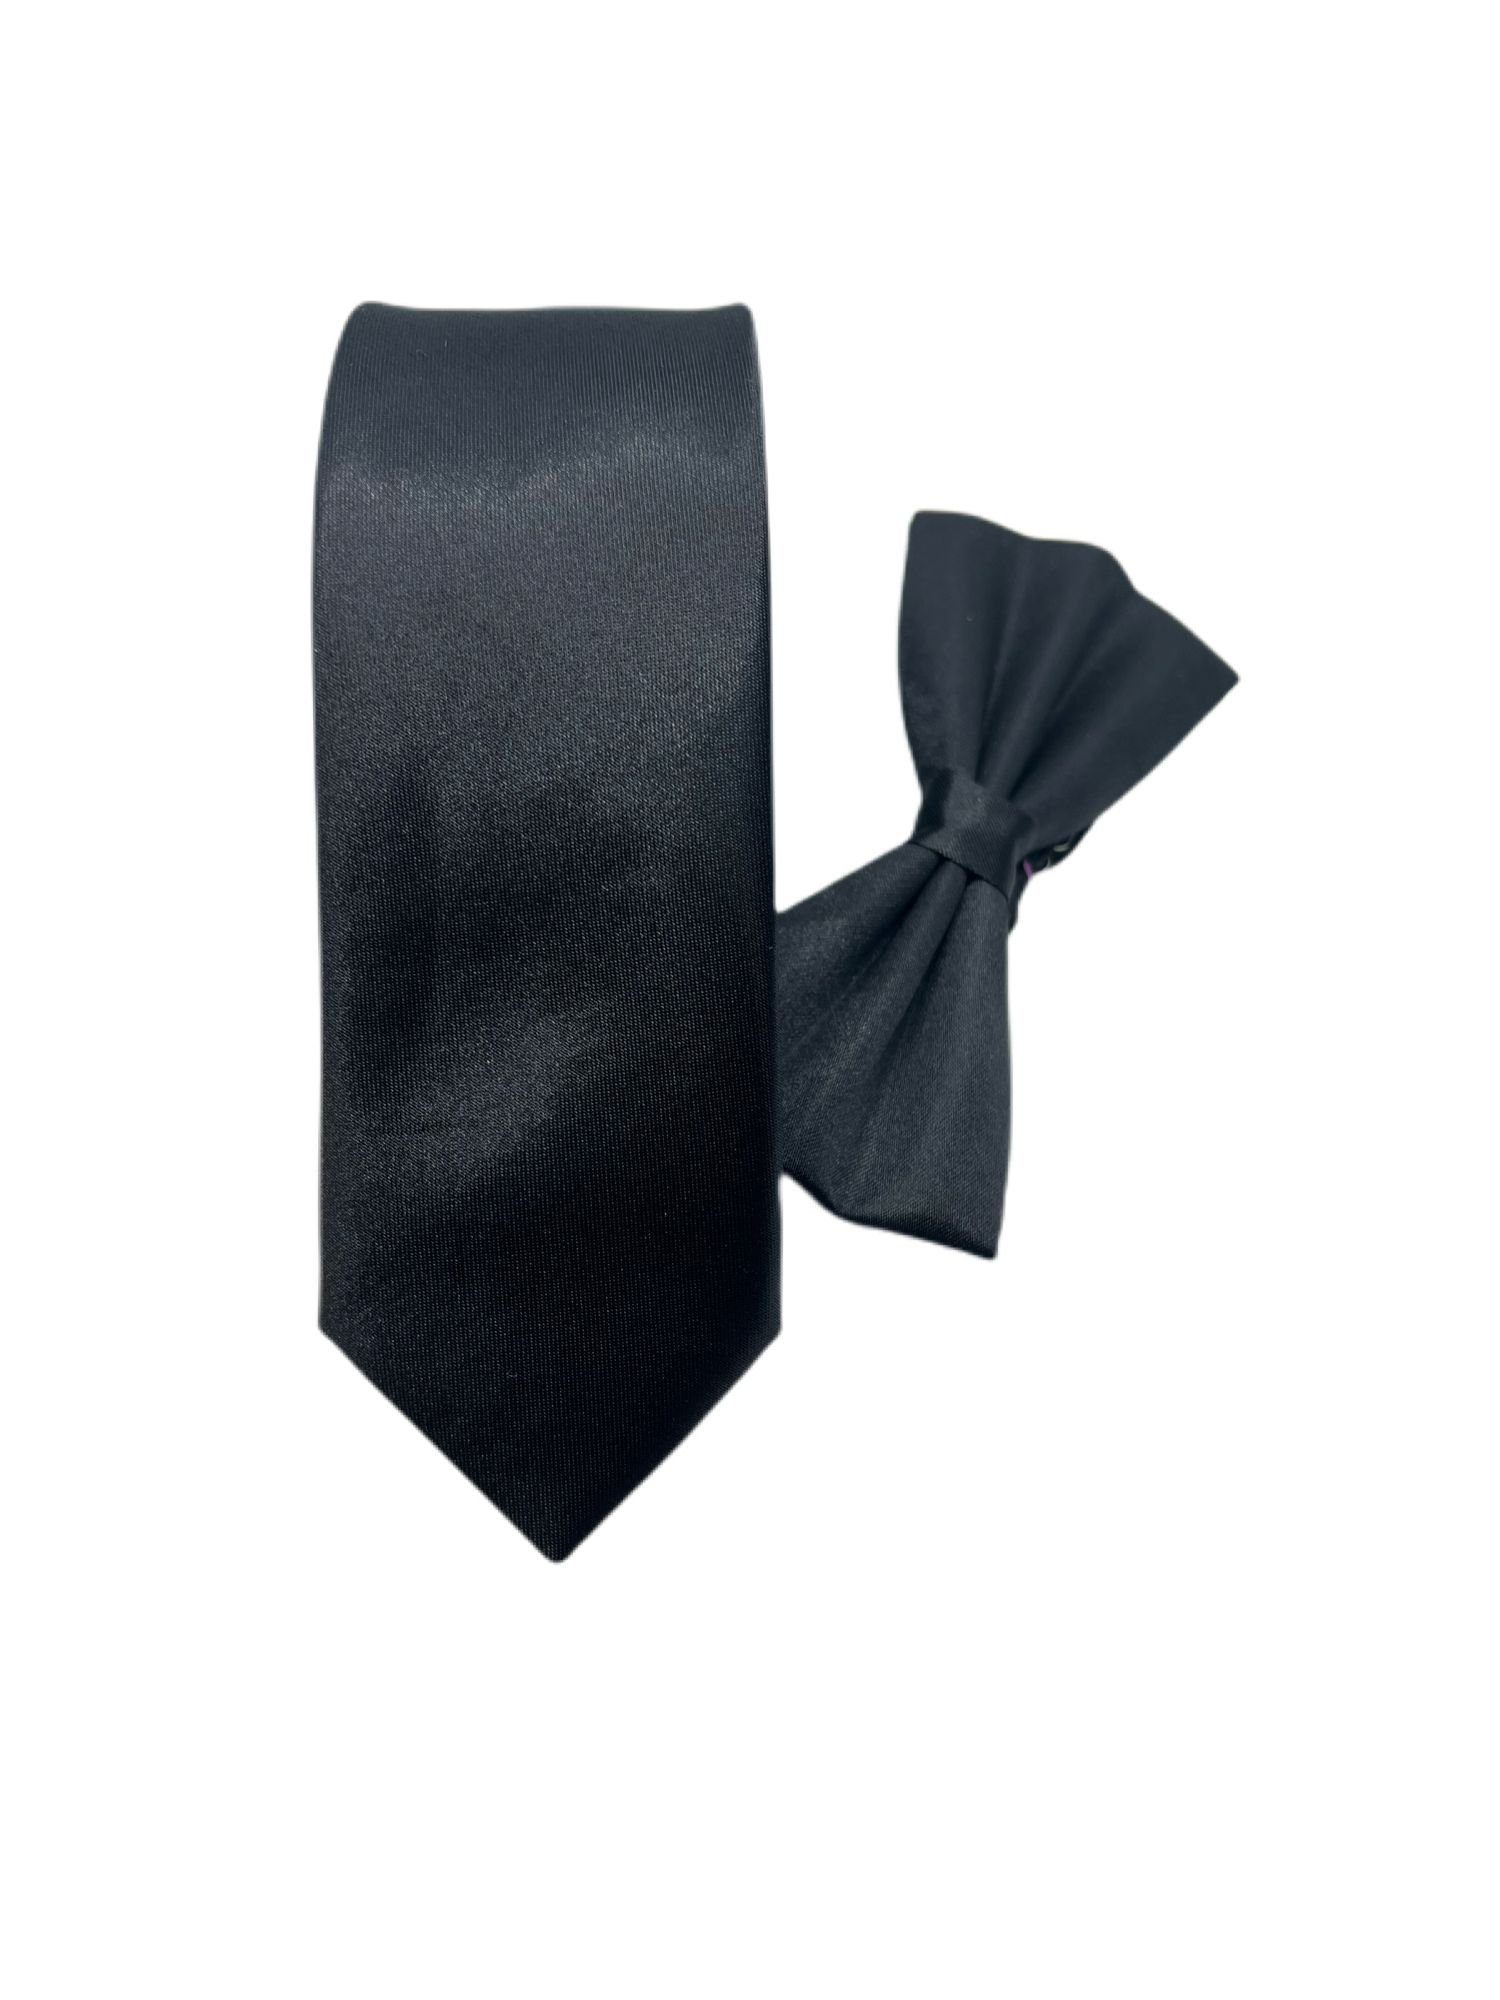 Megaman Jeans Krawatte »Krawatte Fliege Hochzeit Schleife Herren Schlips  Business Slim Freizeit Büro Kravatte« online kaufen | OTTO